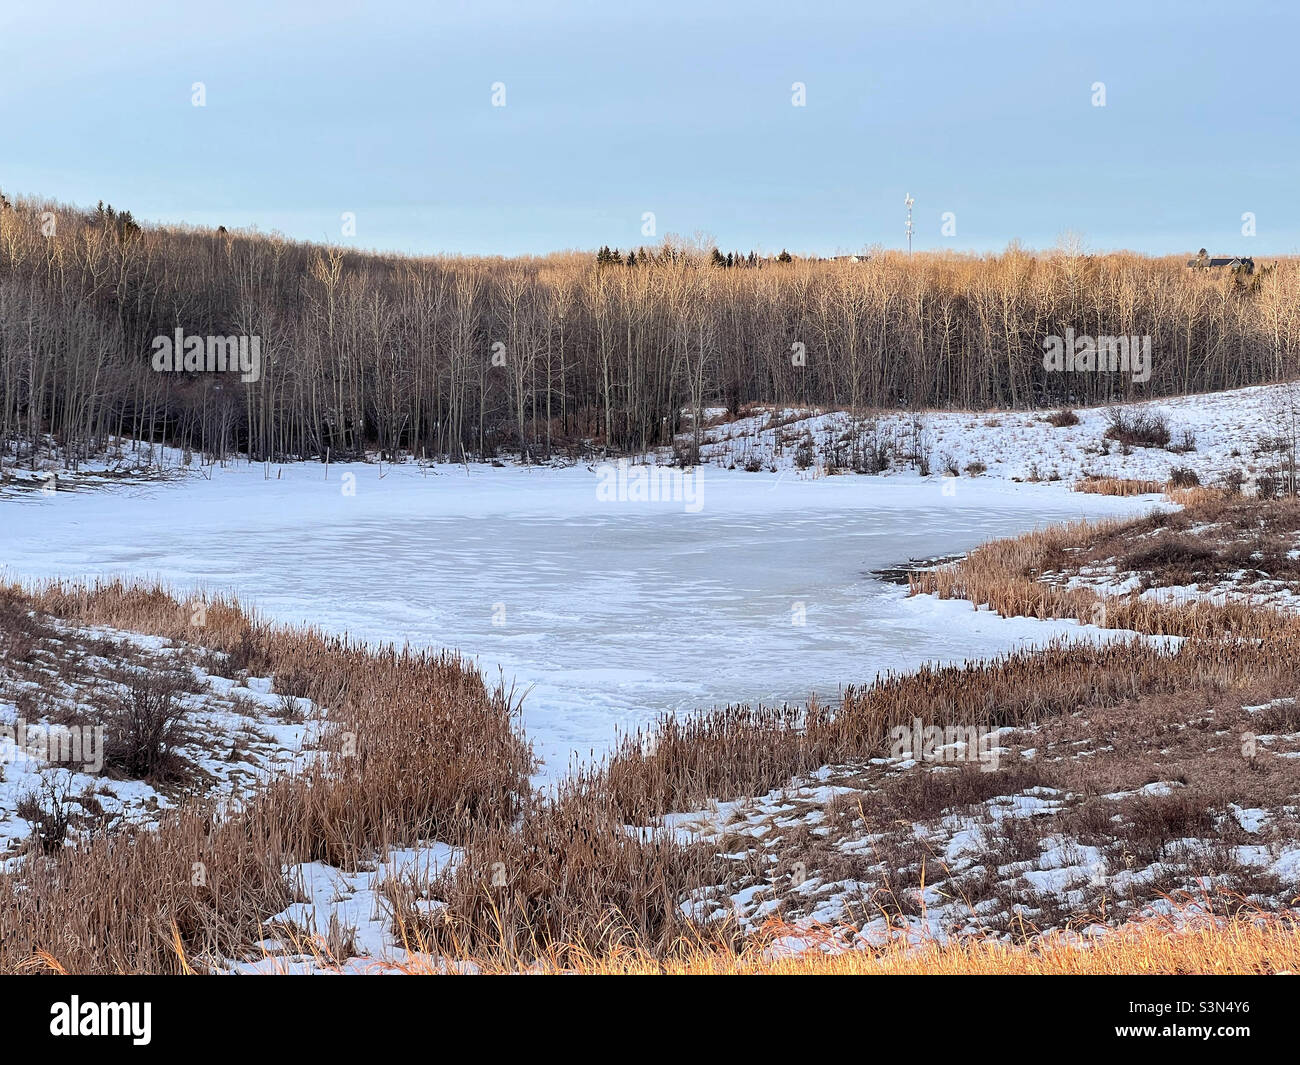 L'étang couvert de neige commence à fondre, entouré d'arbres nus qui commencent à être éclairés par le soleil tôt le matin.Près de Calgary, Alberta, Canada. Banque D'Images